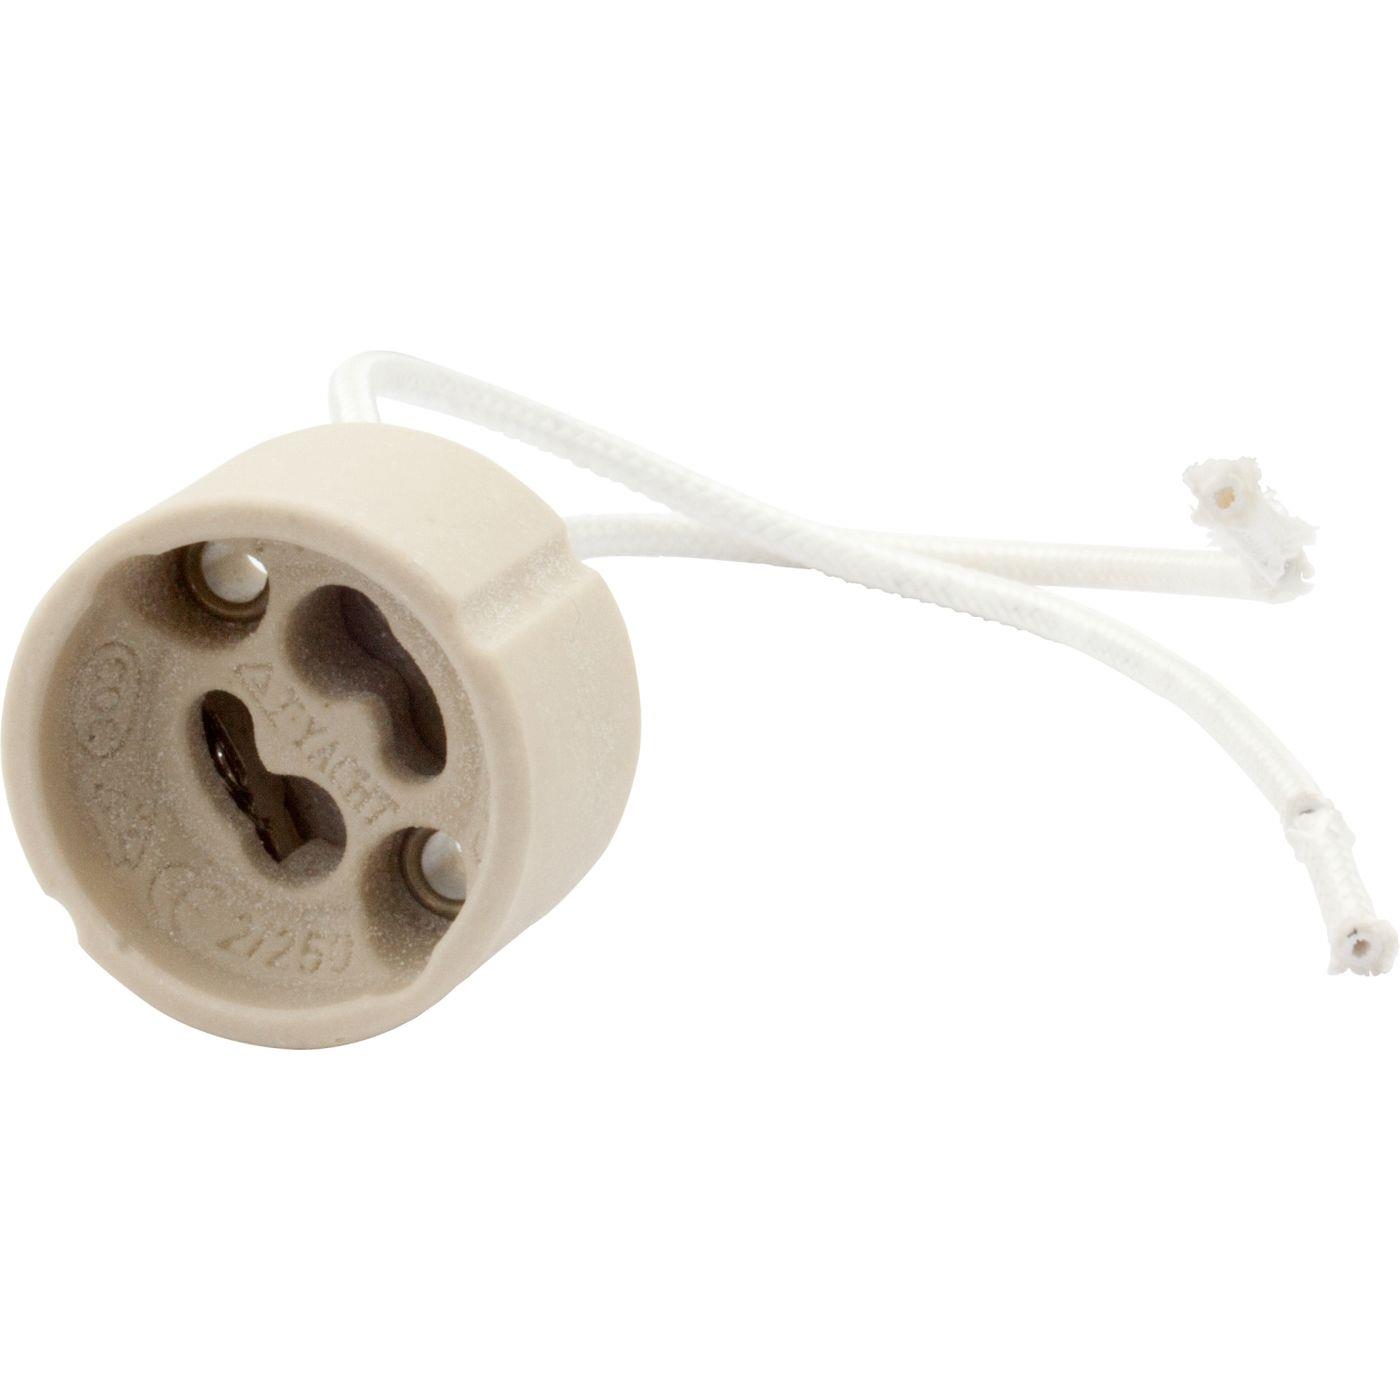 GU10 Leuchtmittel Fassung Keramik + 14,5cm Kabel für Lampen 230V